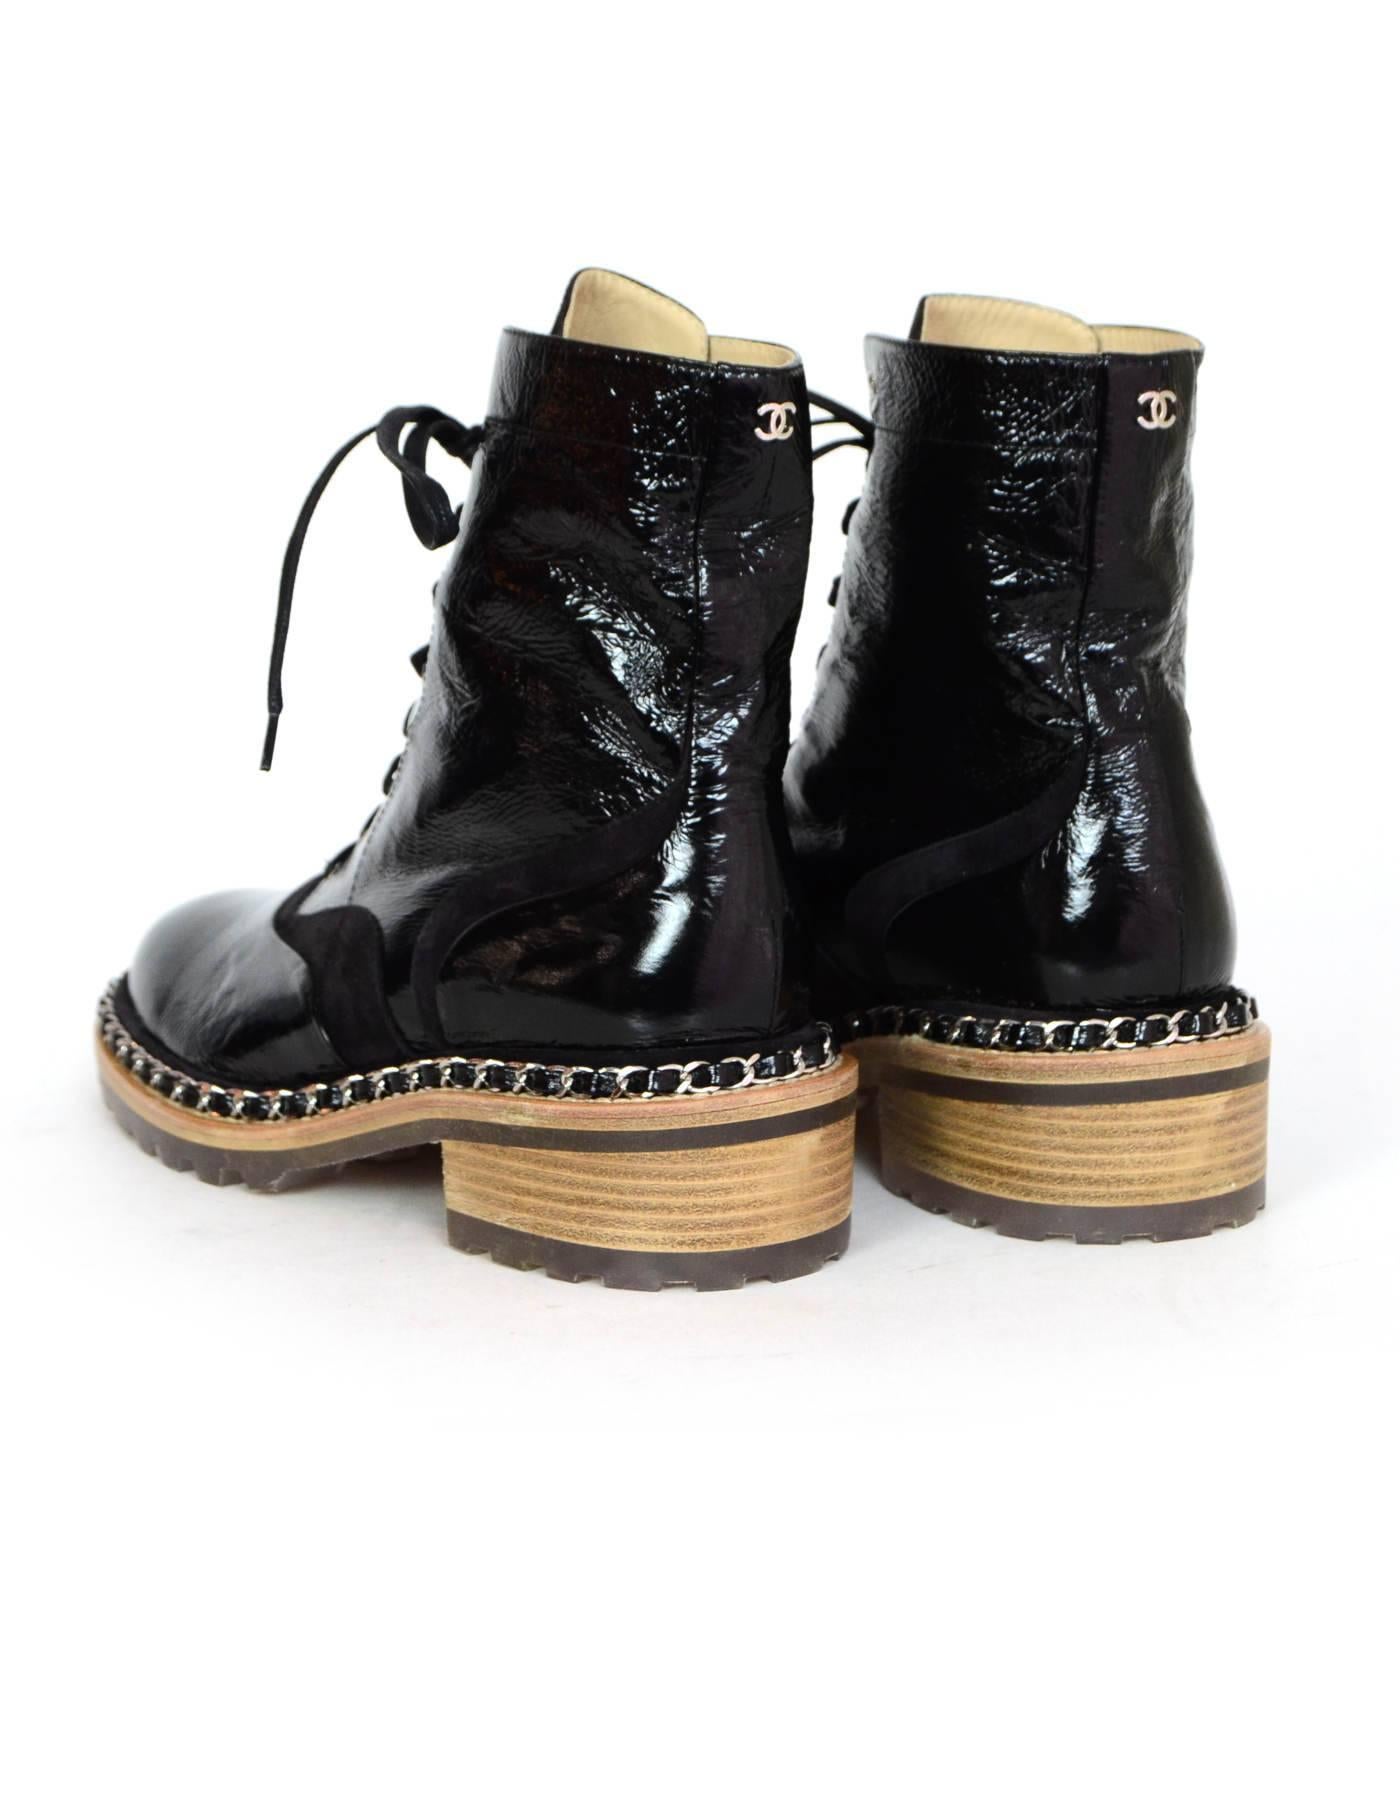 Women's Chanel Black Patent & Chain Trim Boots Sz 38.5